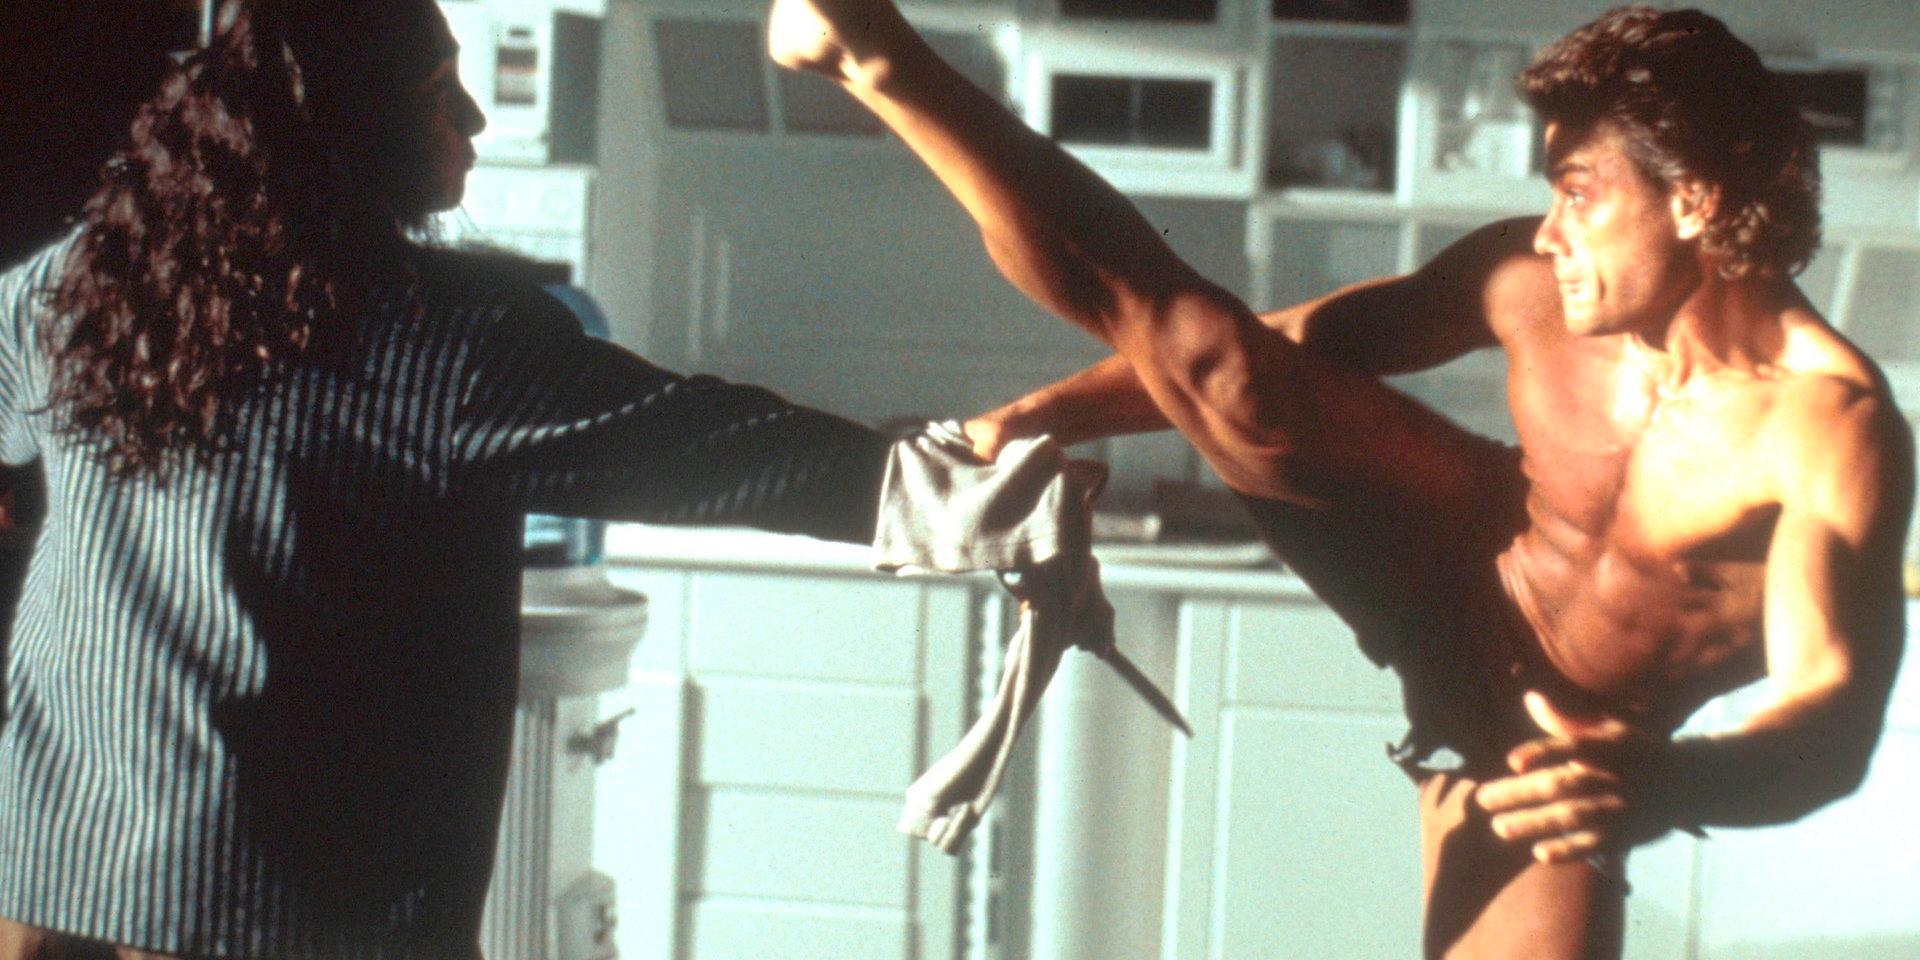 Jean-Claude Van Damme flexar sina muskler från Bryssel i 'Timecop' (1994) , en tidsreseaction så dum att klockorna stannar. Pressbild.